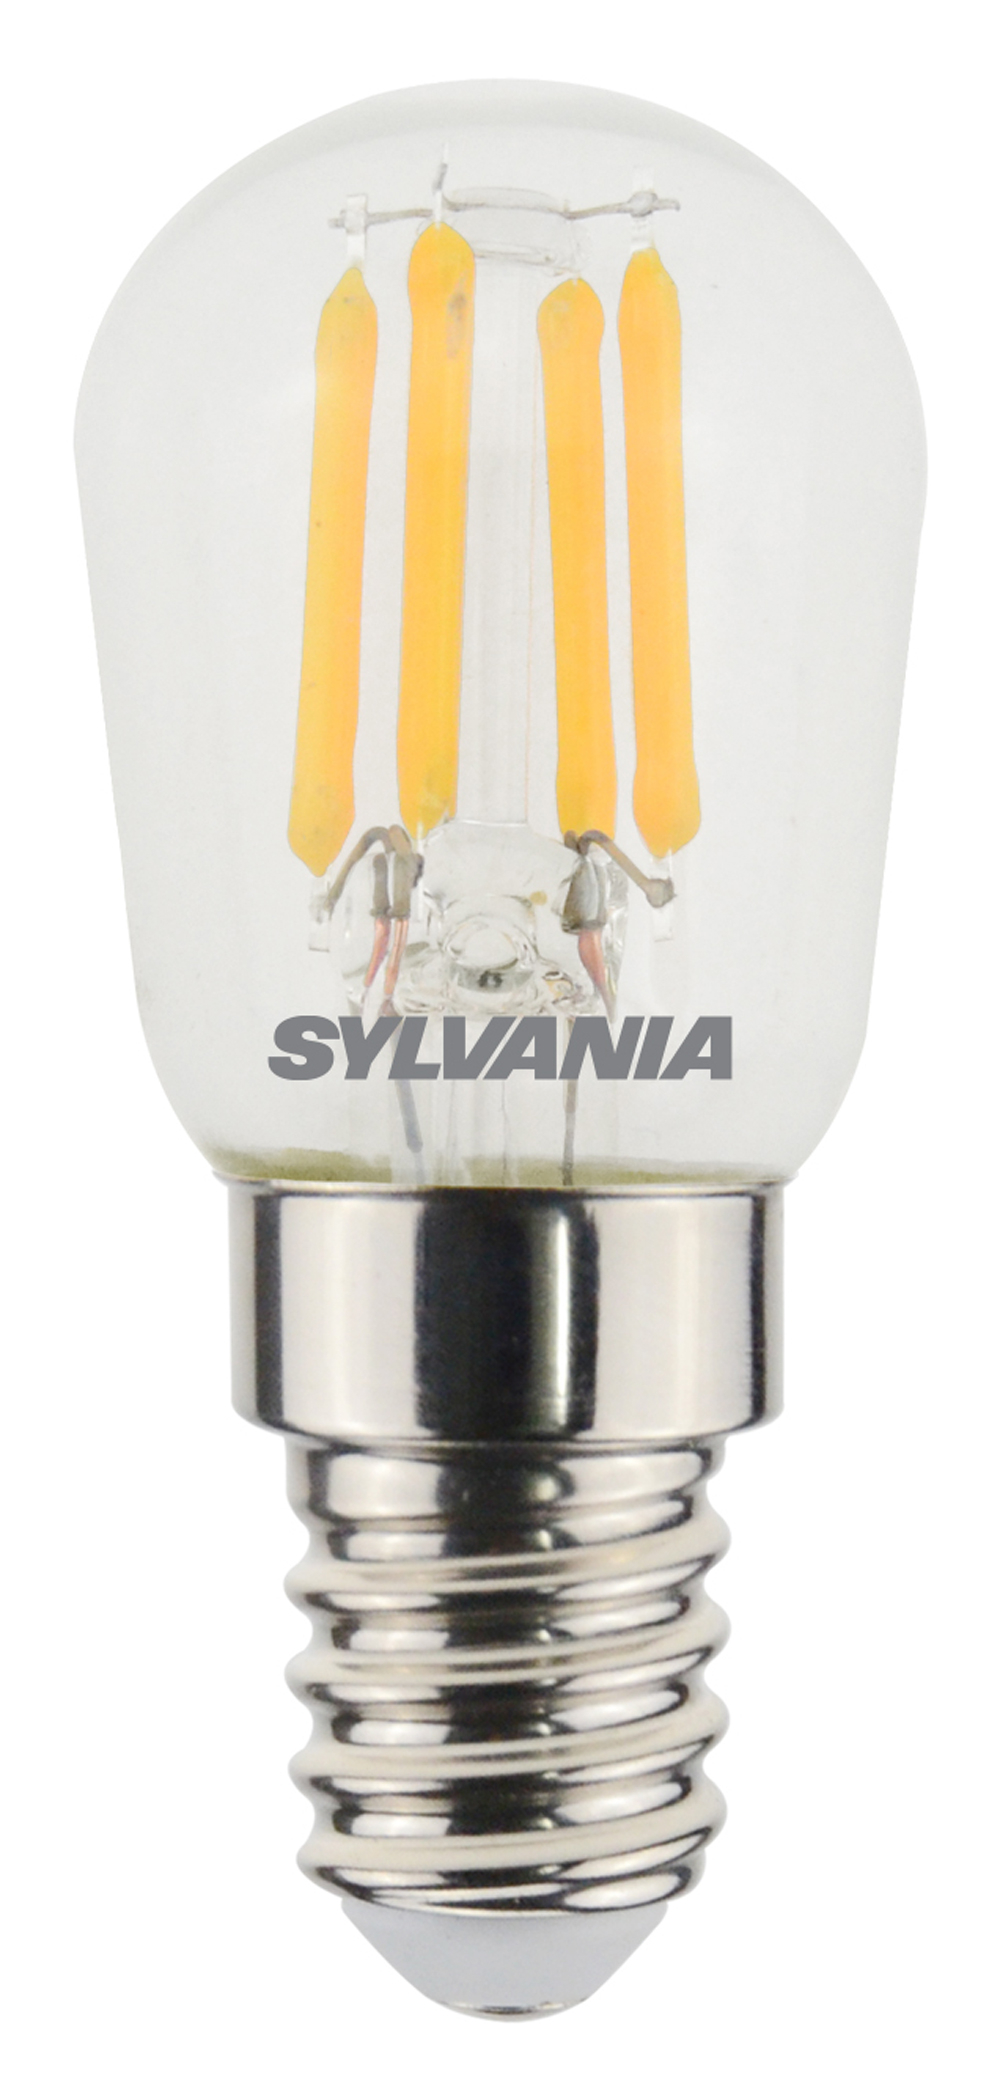 Lampe LED spéciale frigo E14, 1W2 230V, blanc chaud à 4,90€